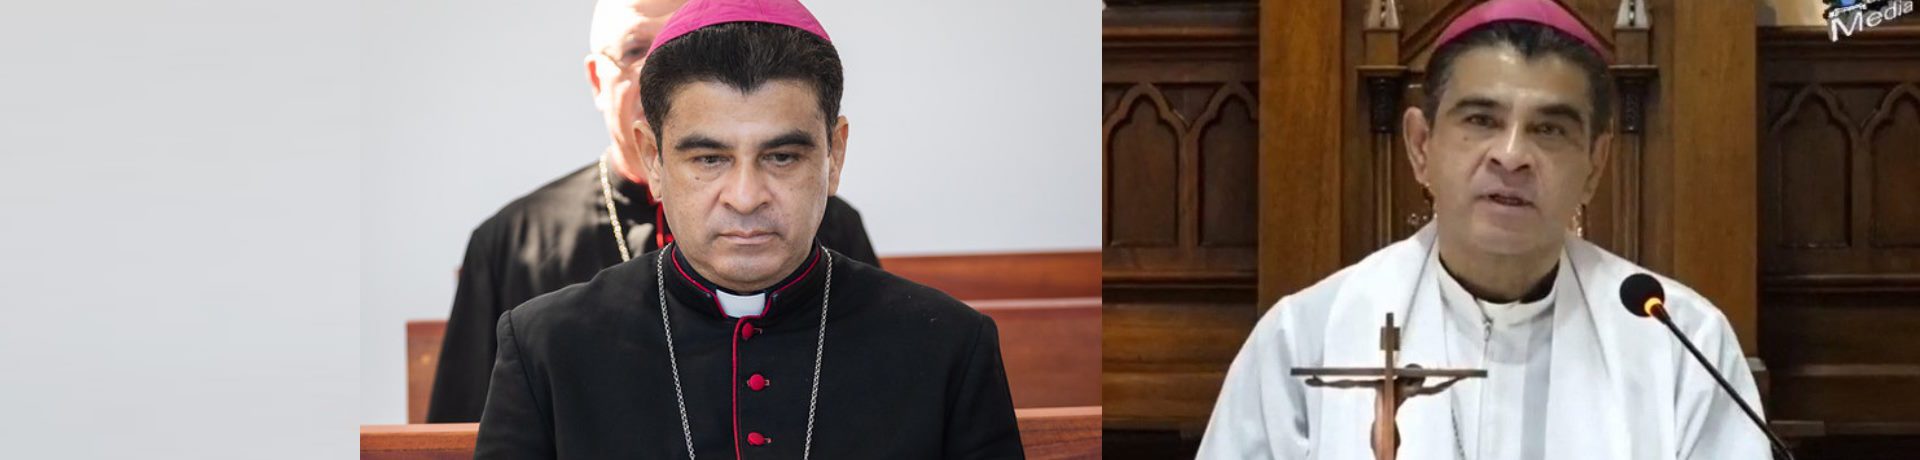 Der Bischof von Matagalpa, Rolando José Álvarez Lagos, wurde jetzt von einem nicaraguanischen Gericht zu 26 Jahren Gefängnis wegen „Ungehorsam und Untergrabung der nationalen Integrität“ verurteilt,